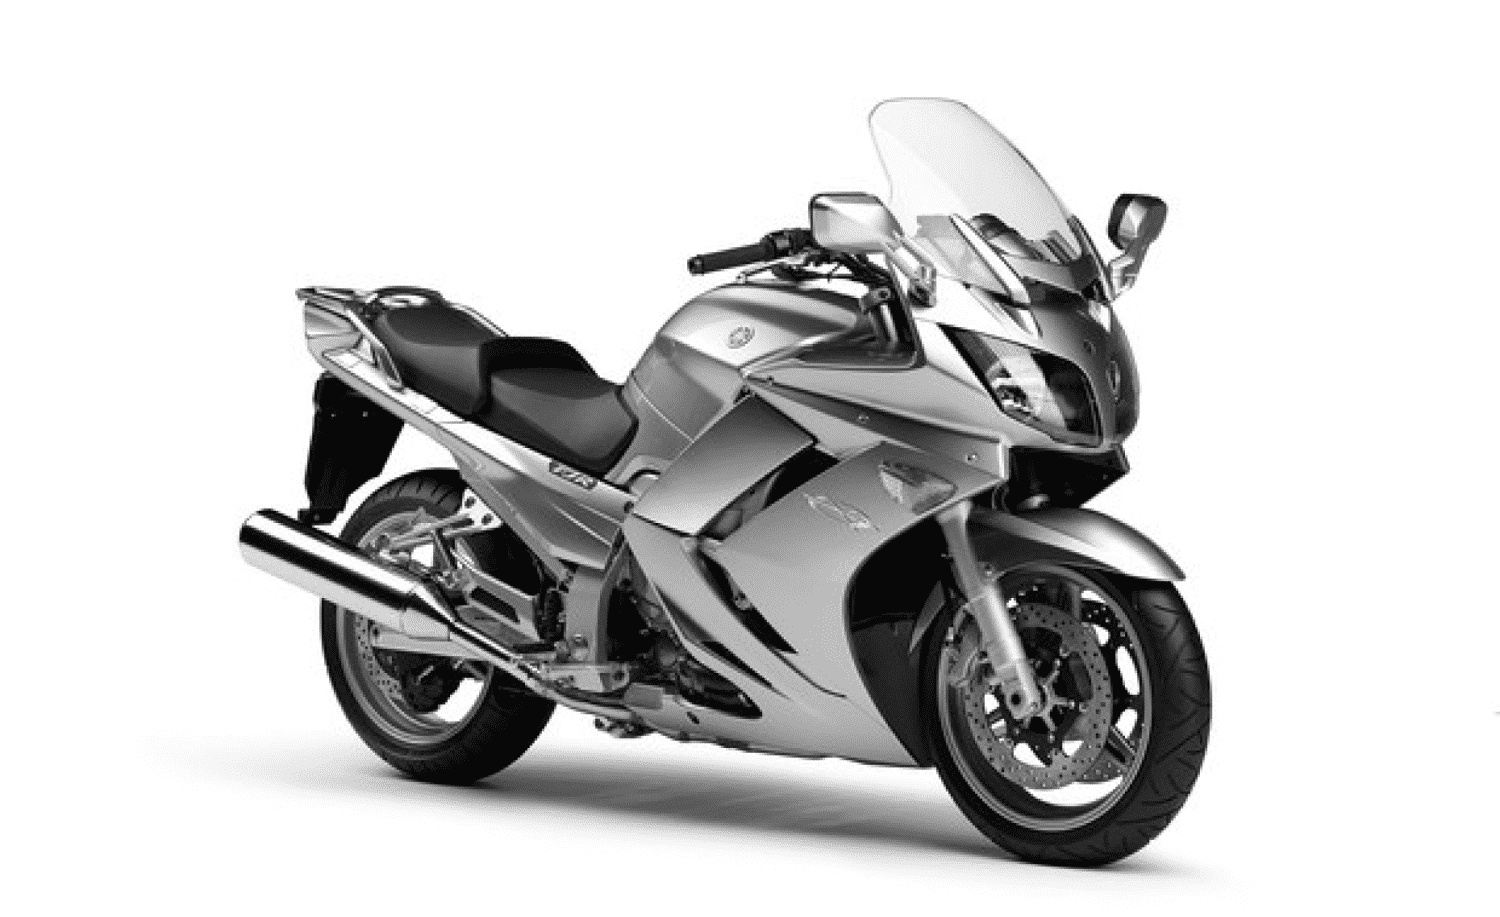 2012 Yamaha FJR1300A- Stock Image